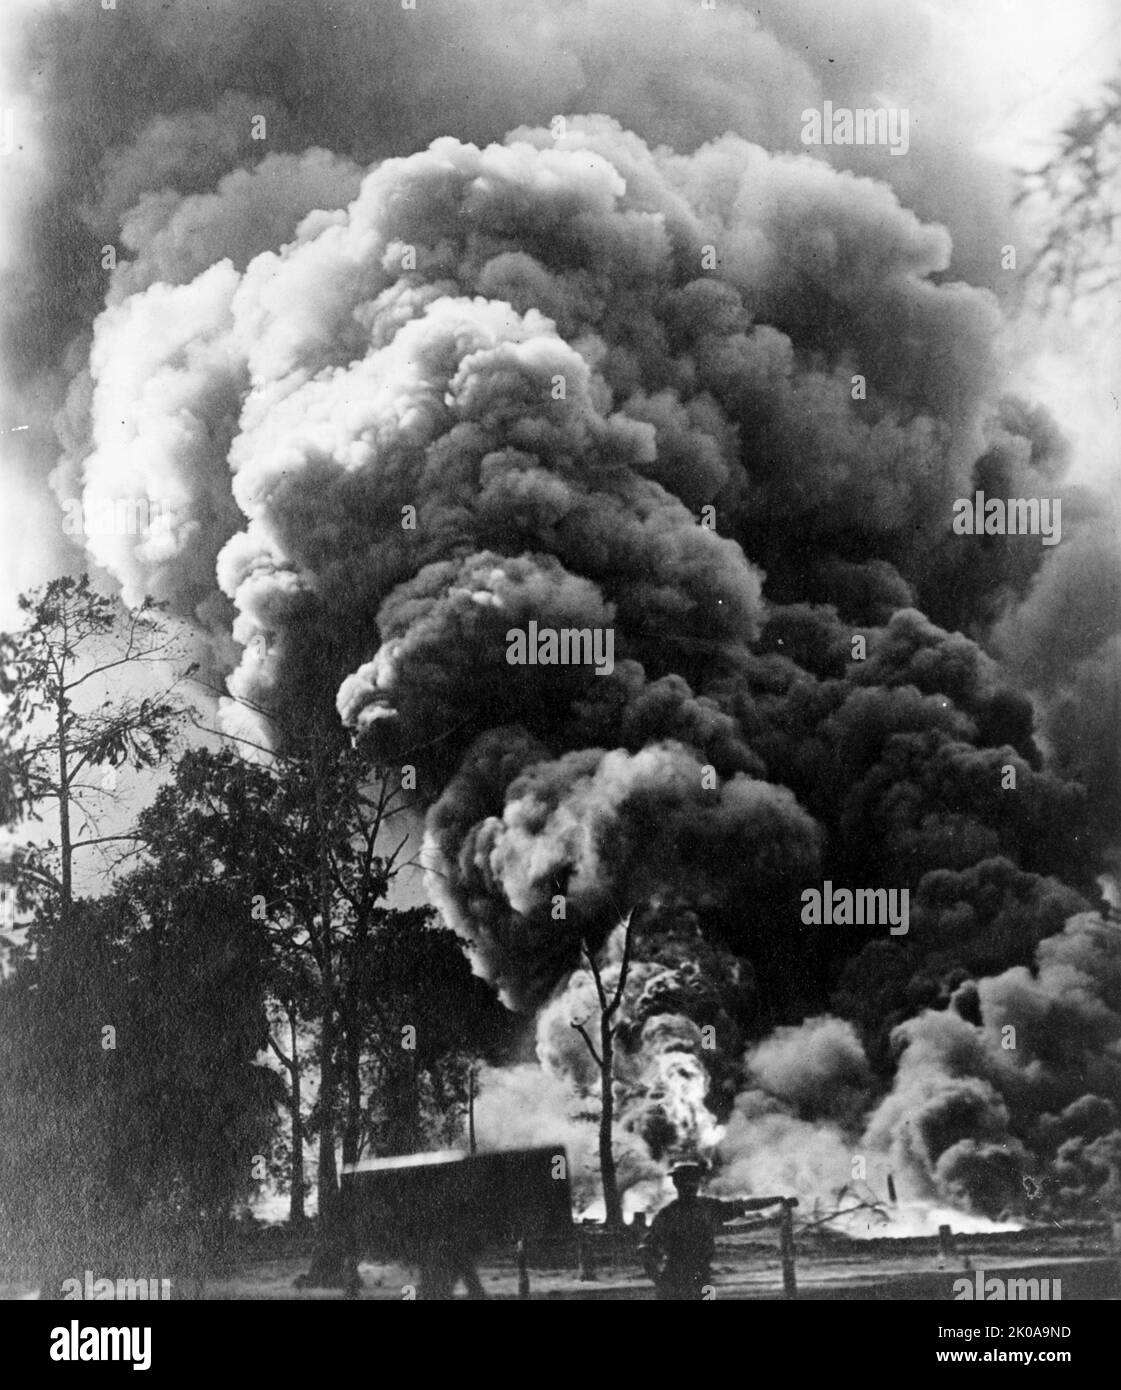 Riesige Ölkeule in Mooringsport, La. Eine monströse Säule brüllender Flamme, Star Oil Co. Loucke no. 3, seit dem 7. August 1913 in Brand. Foto veröffentlicht c1913 Stockfoto